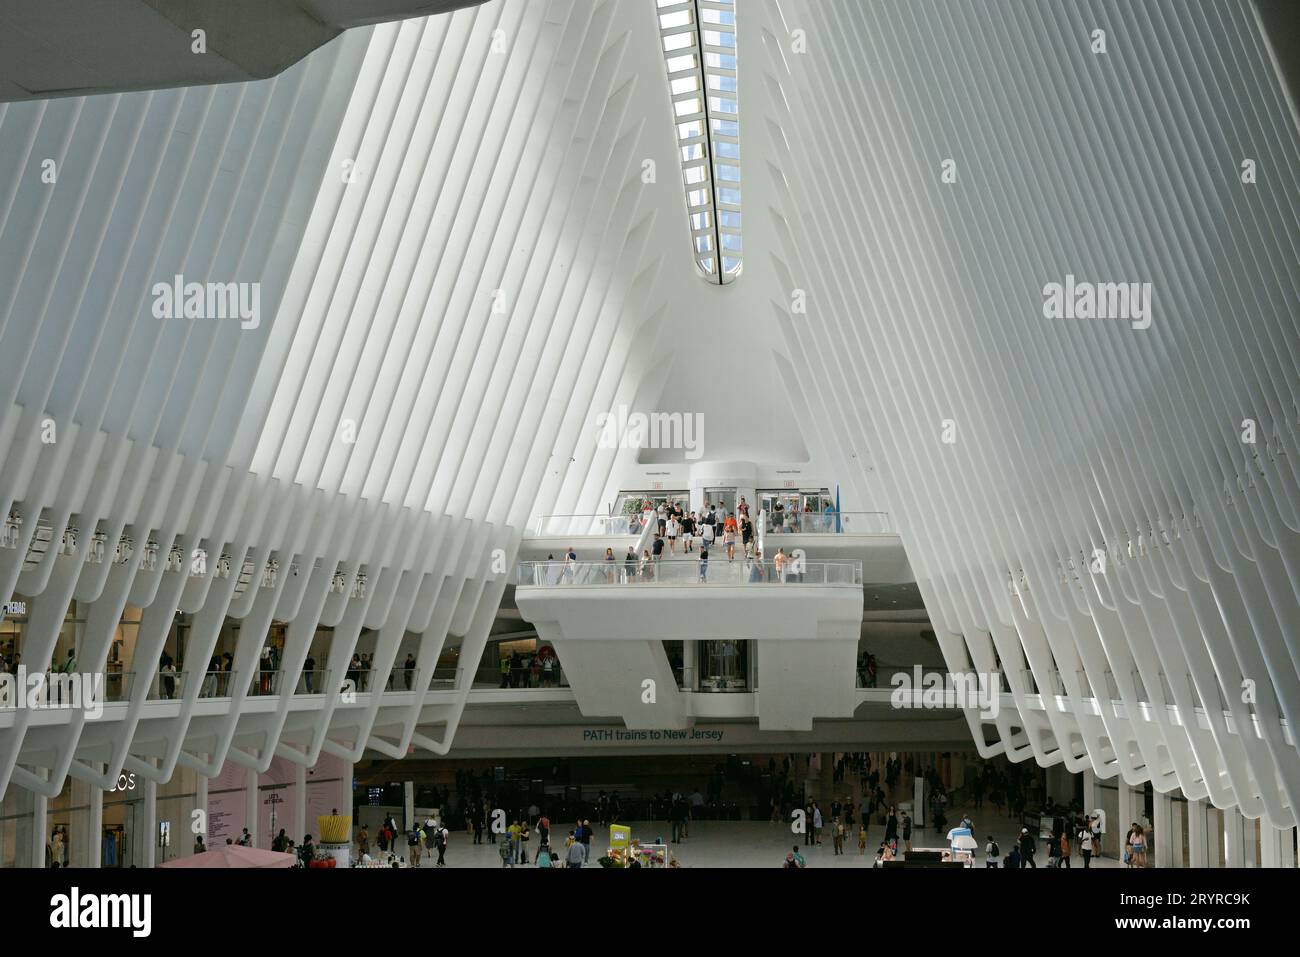 Il centro di trasporto Oculus World Trade Center a Ground Zero a Lower Manhattan, Stati Uniti Foto Stock